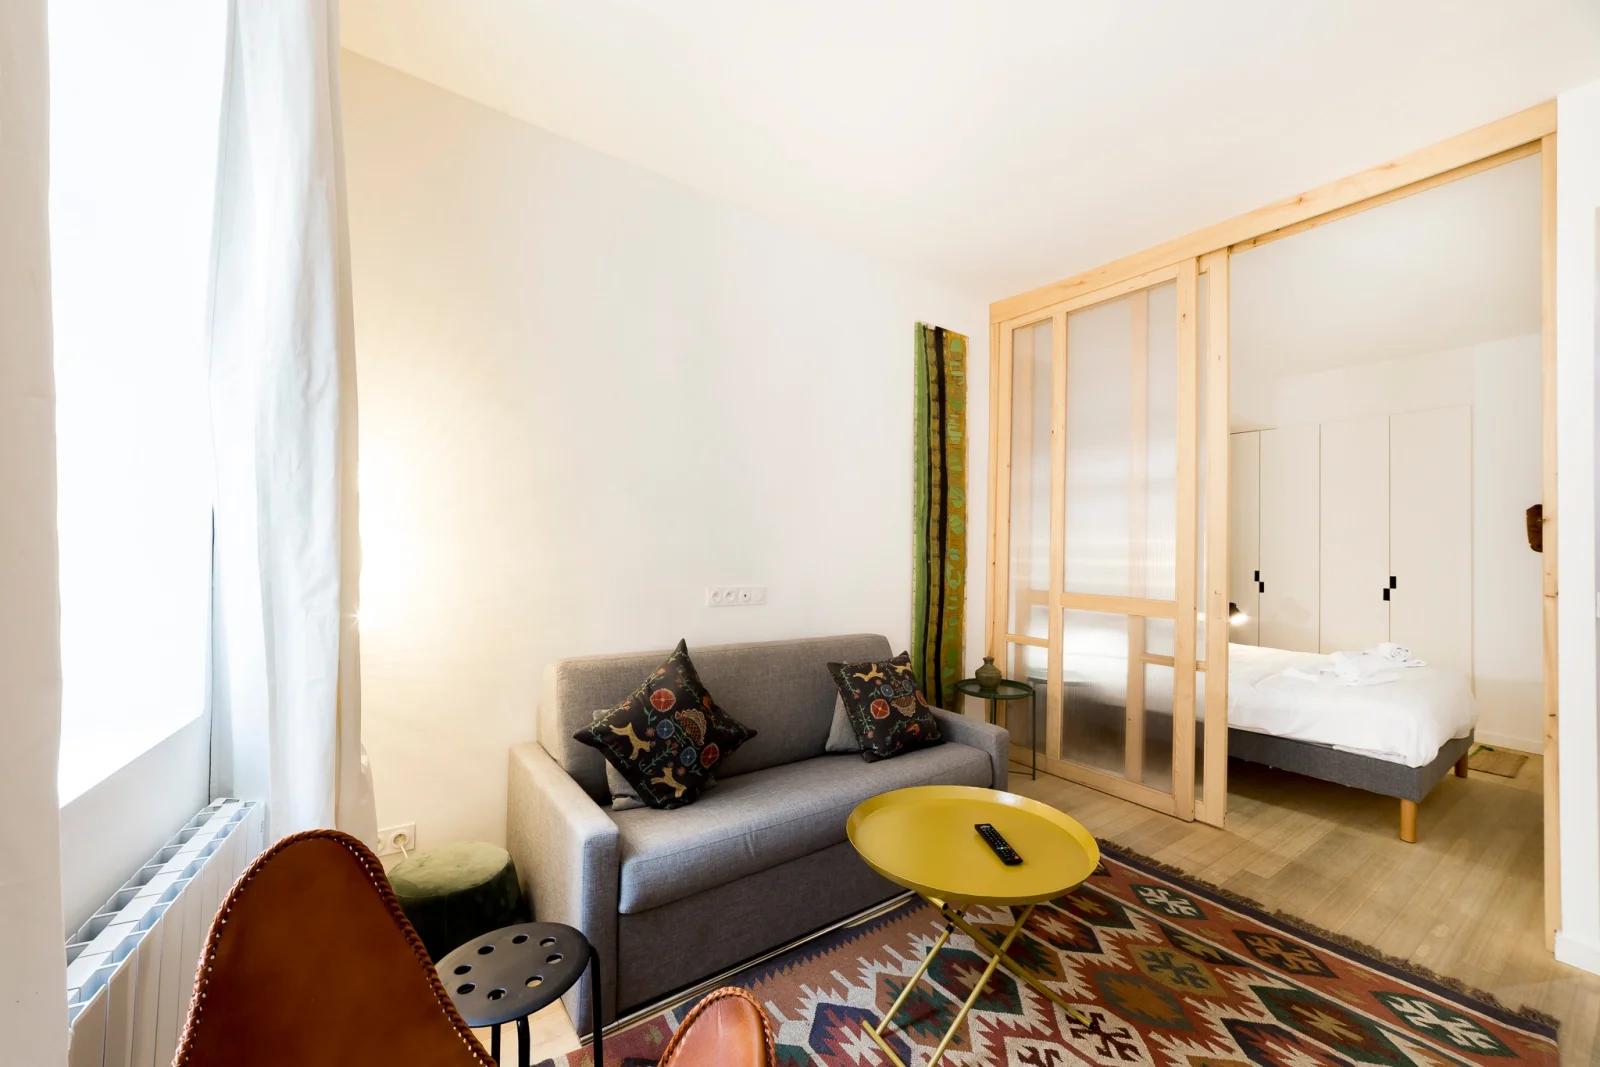 Dormitorio dentro L'Ethnic Ambience - Un lugar confortable en el Vieux Lyon - 2